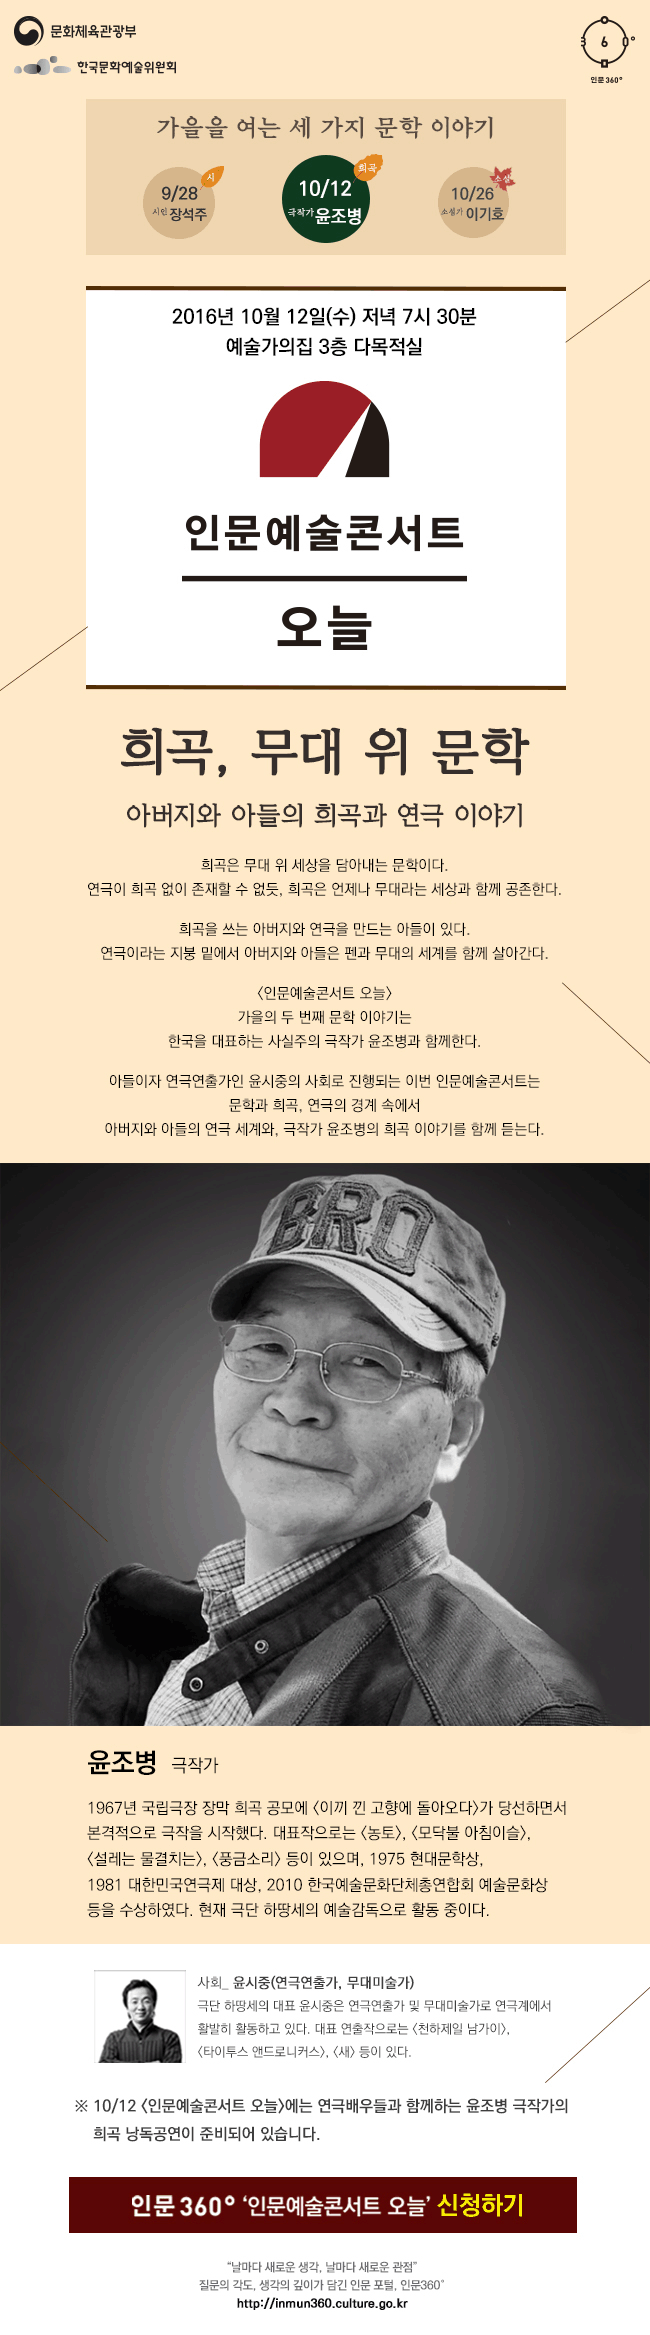 [인문예술콘서트 오늘] 윤조병_희곡, 무대 위 문학